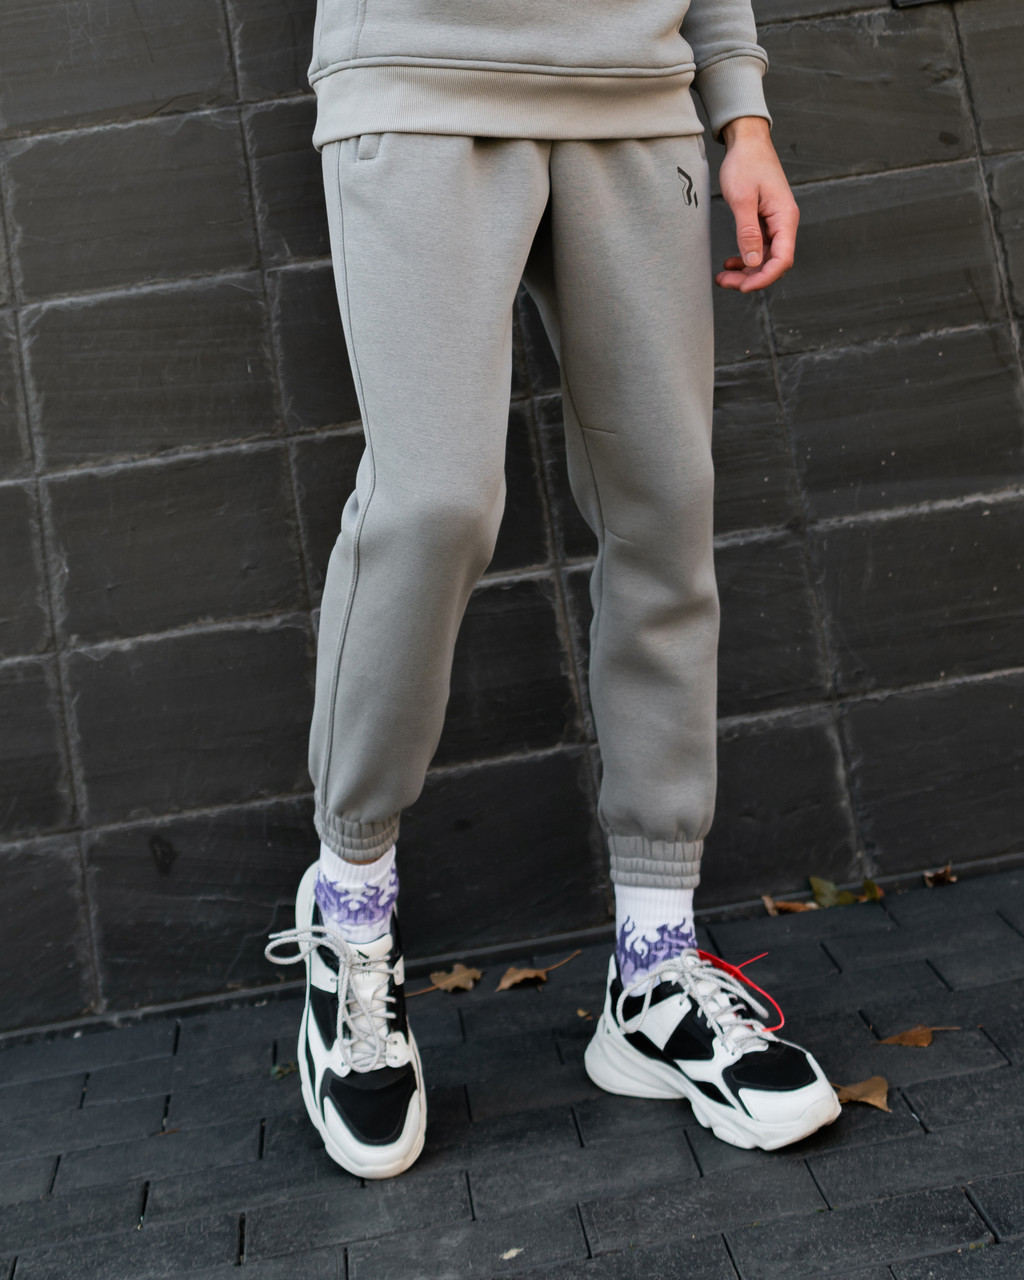 Теплые спортивные штаны Jog 2.0 серые Пушка Огонь - Фото 1